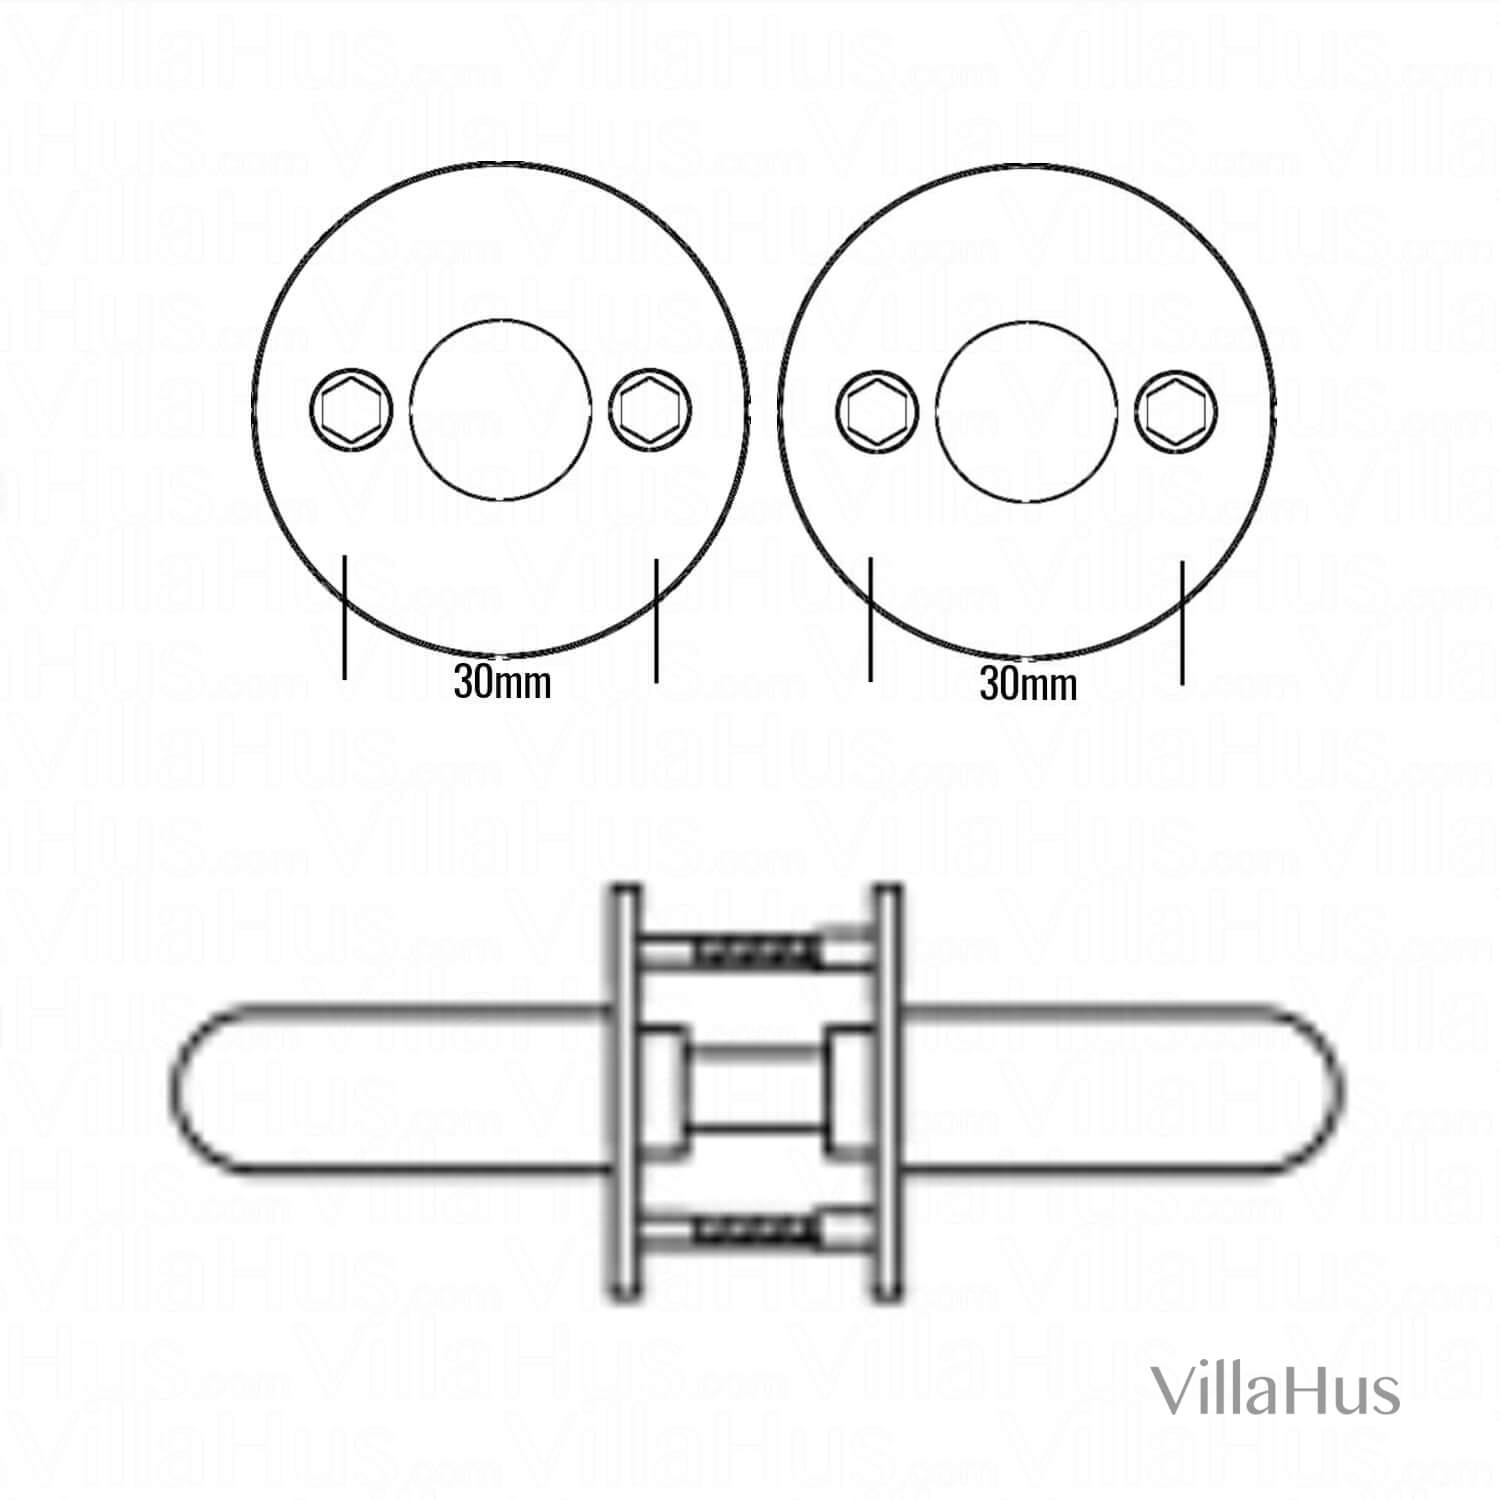 Arne Jacobsen door handle - AJ97 door handle - Brushed steel - small model  cc38mm - Arne Jacobsen door handles - VillaHus